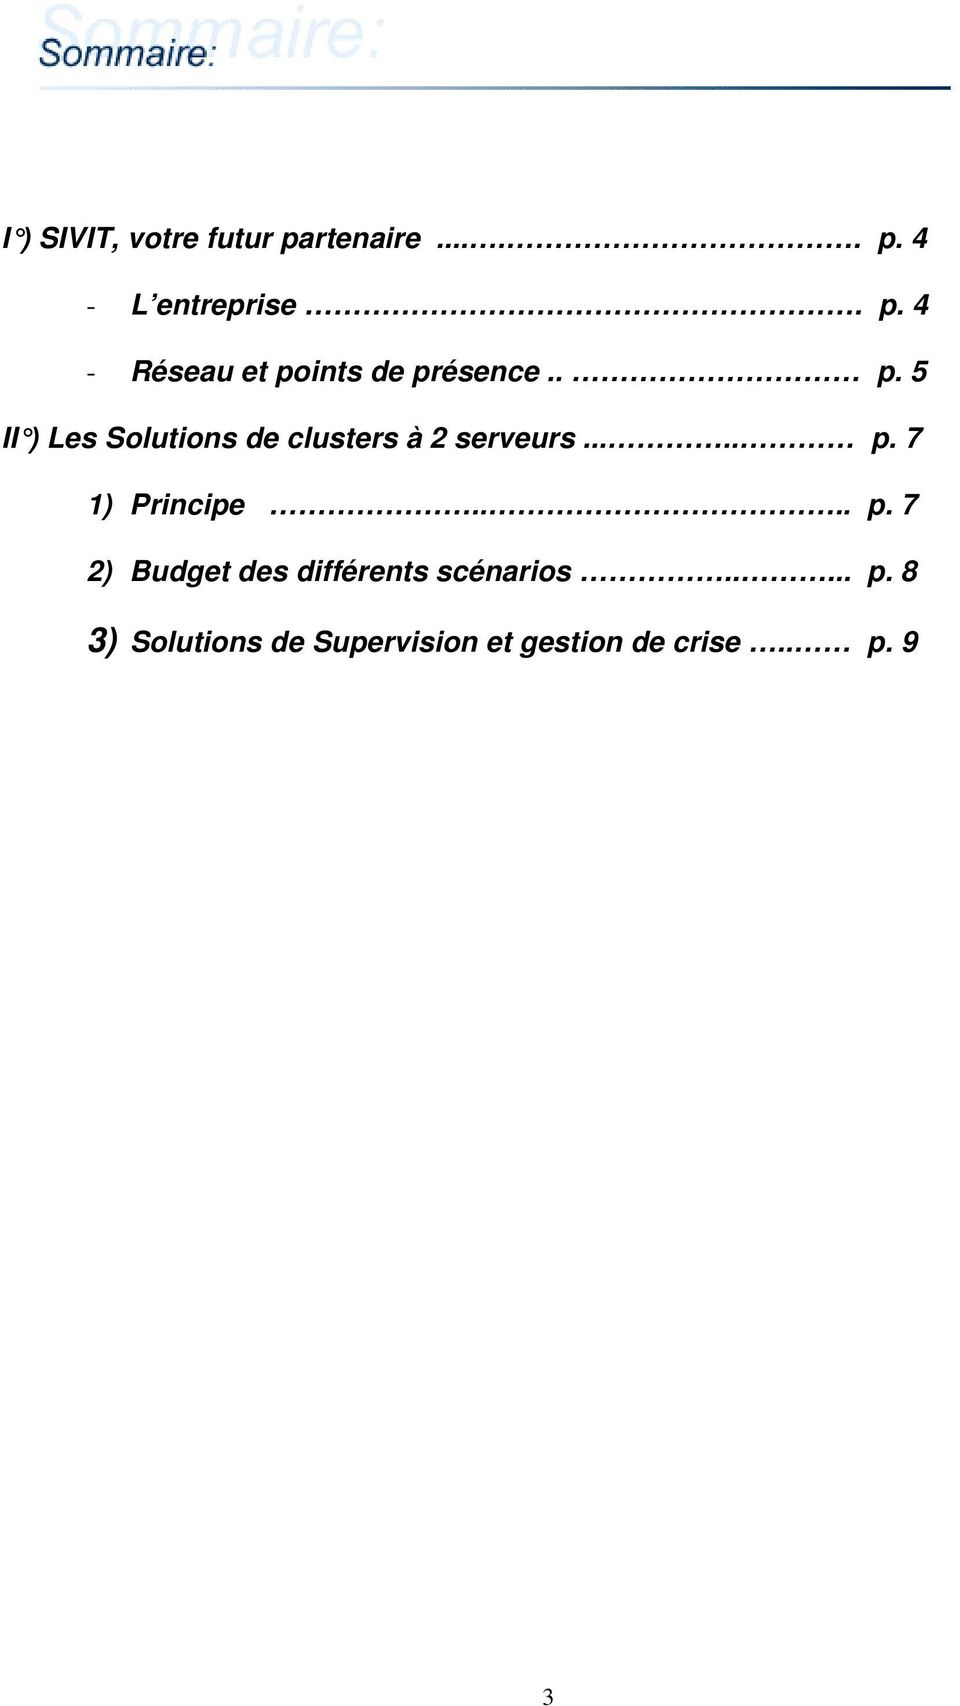 ... p. 7 2) Budget des différents scénarios..... p. 8 3) Solutions de Supervision et gestion de crise.